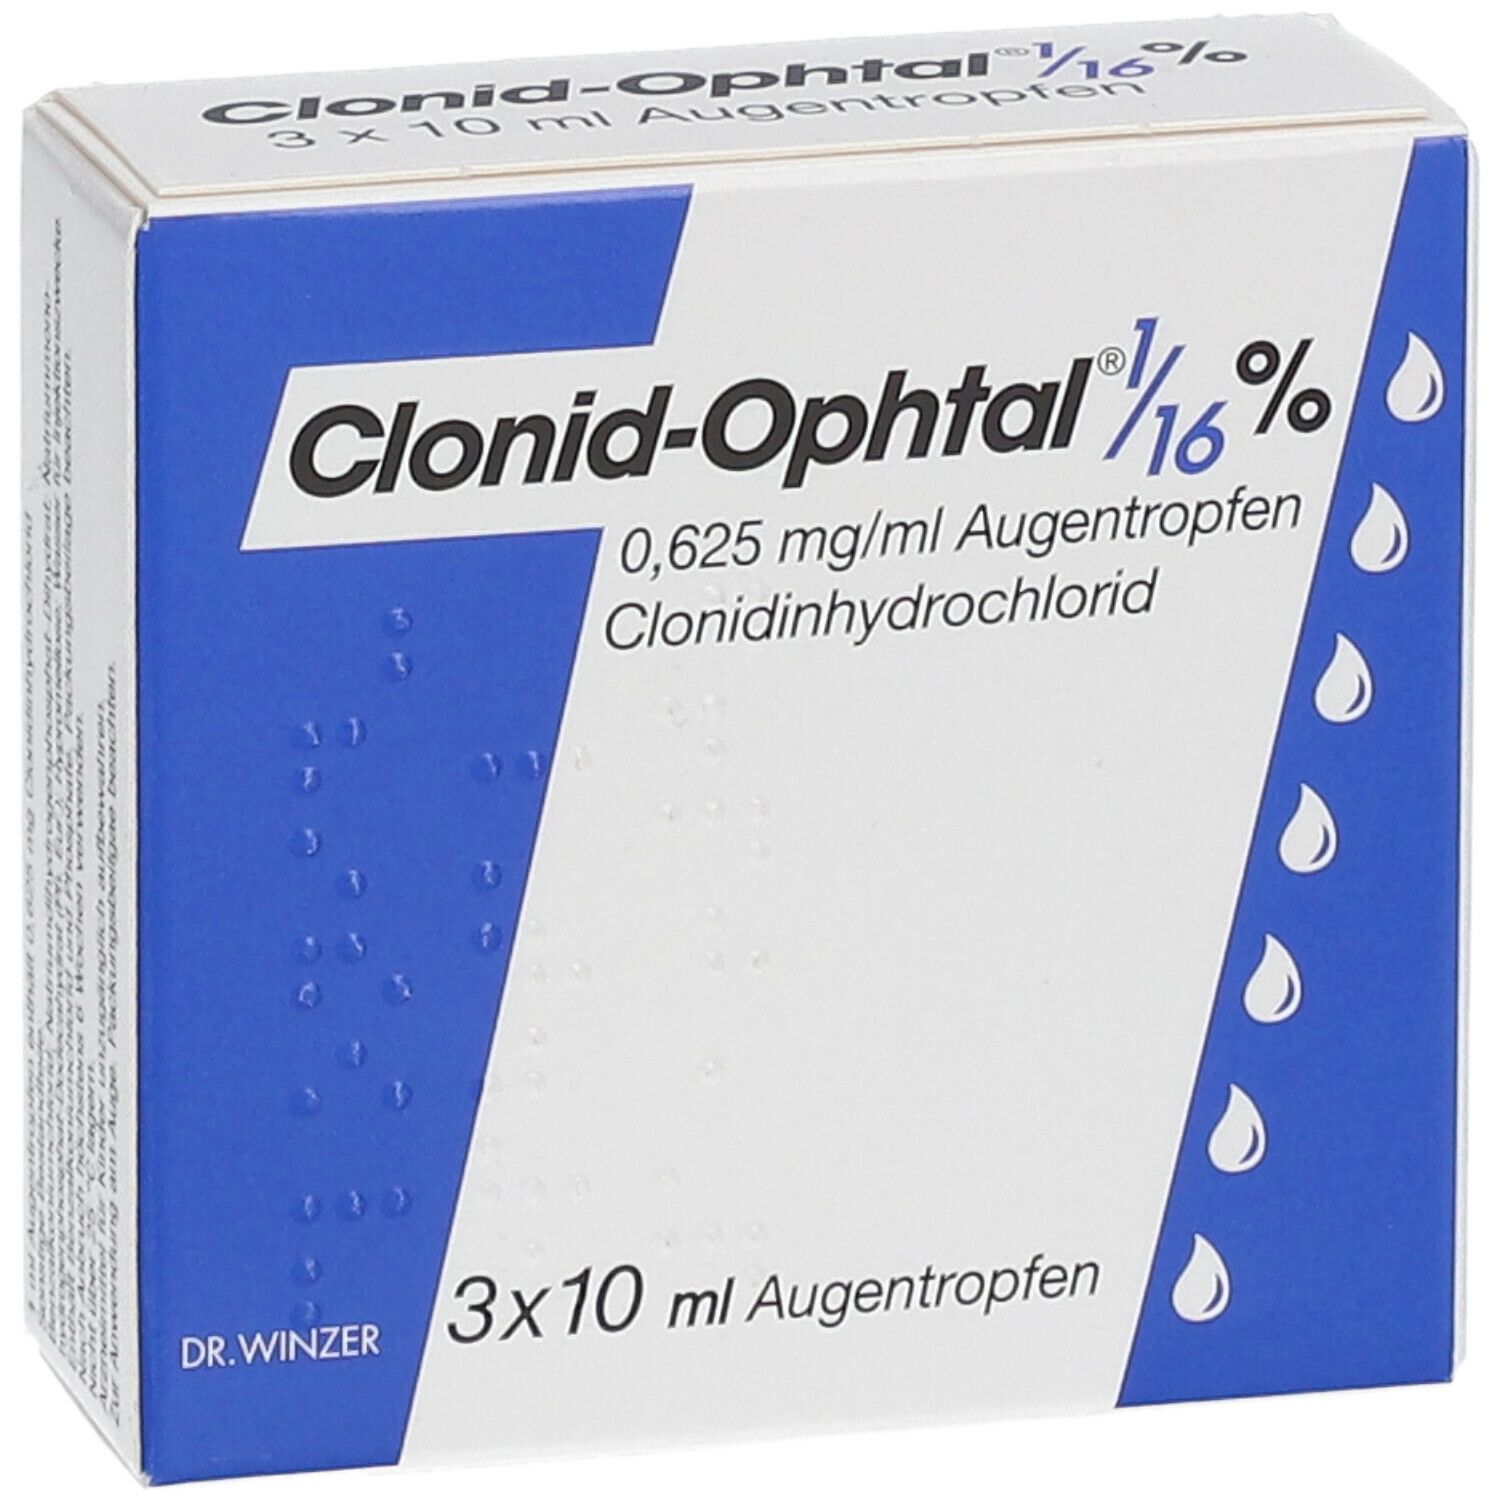 Clonid-Ophtal® 1/16 %